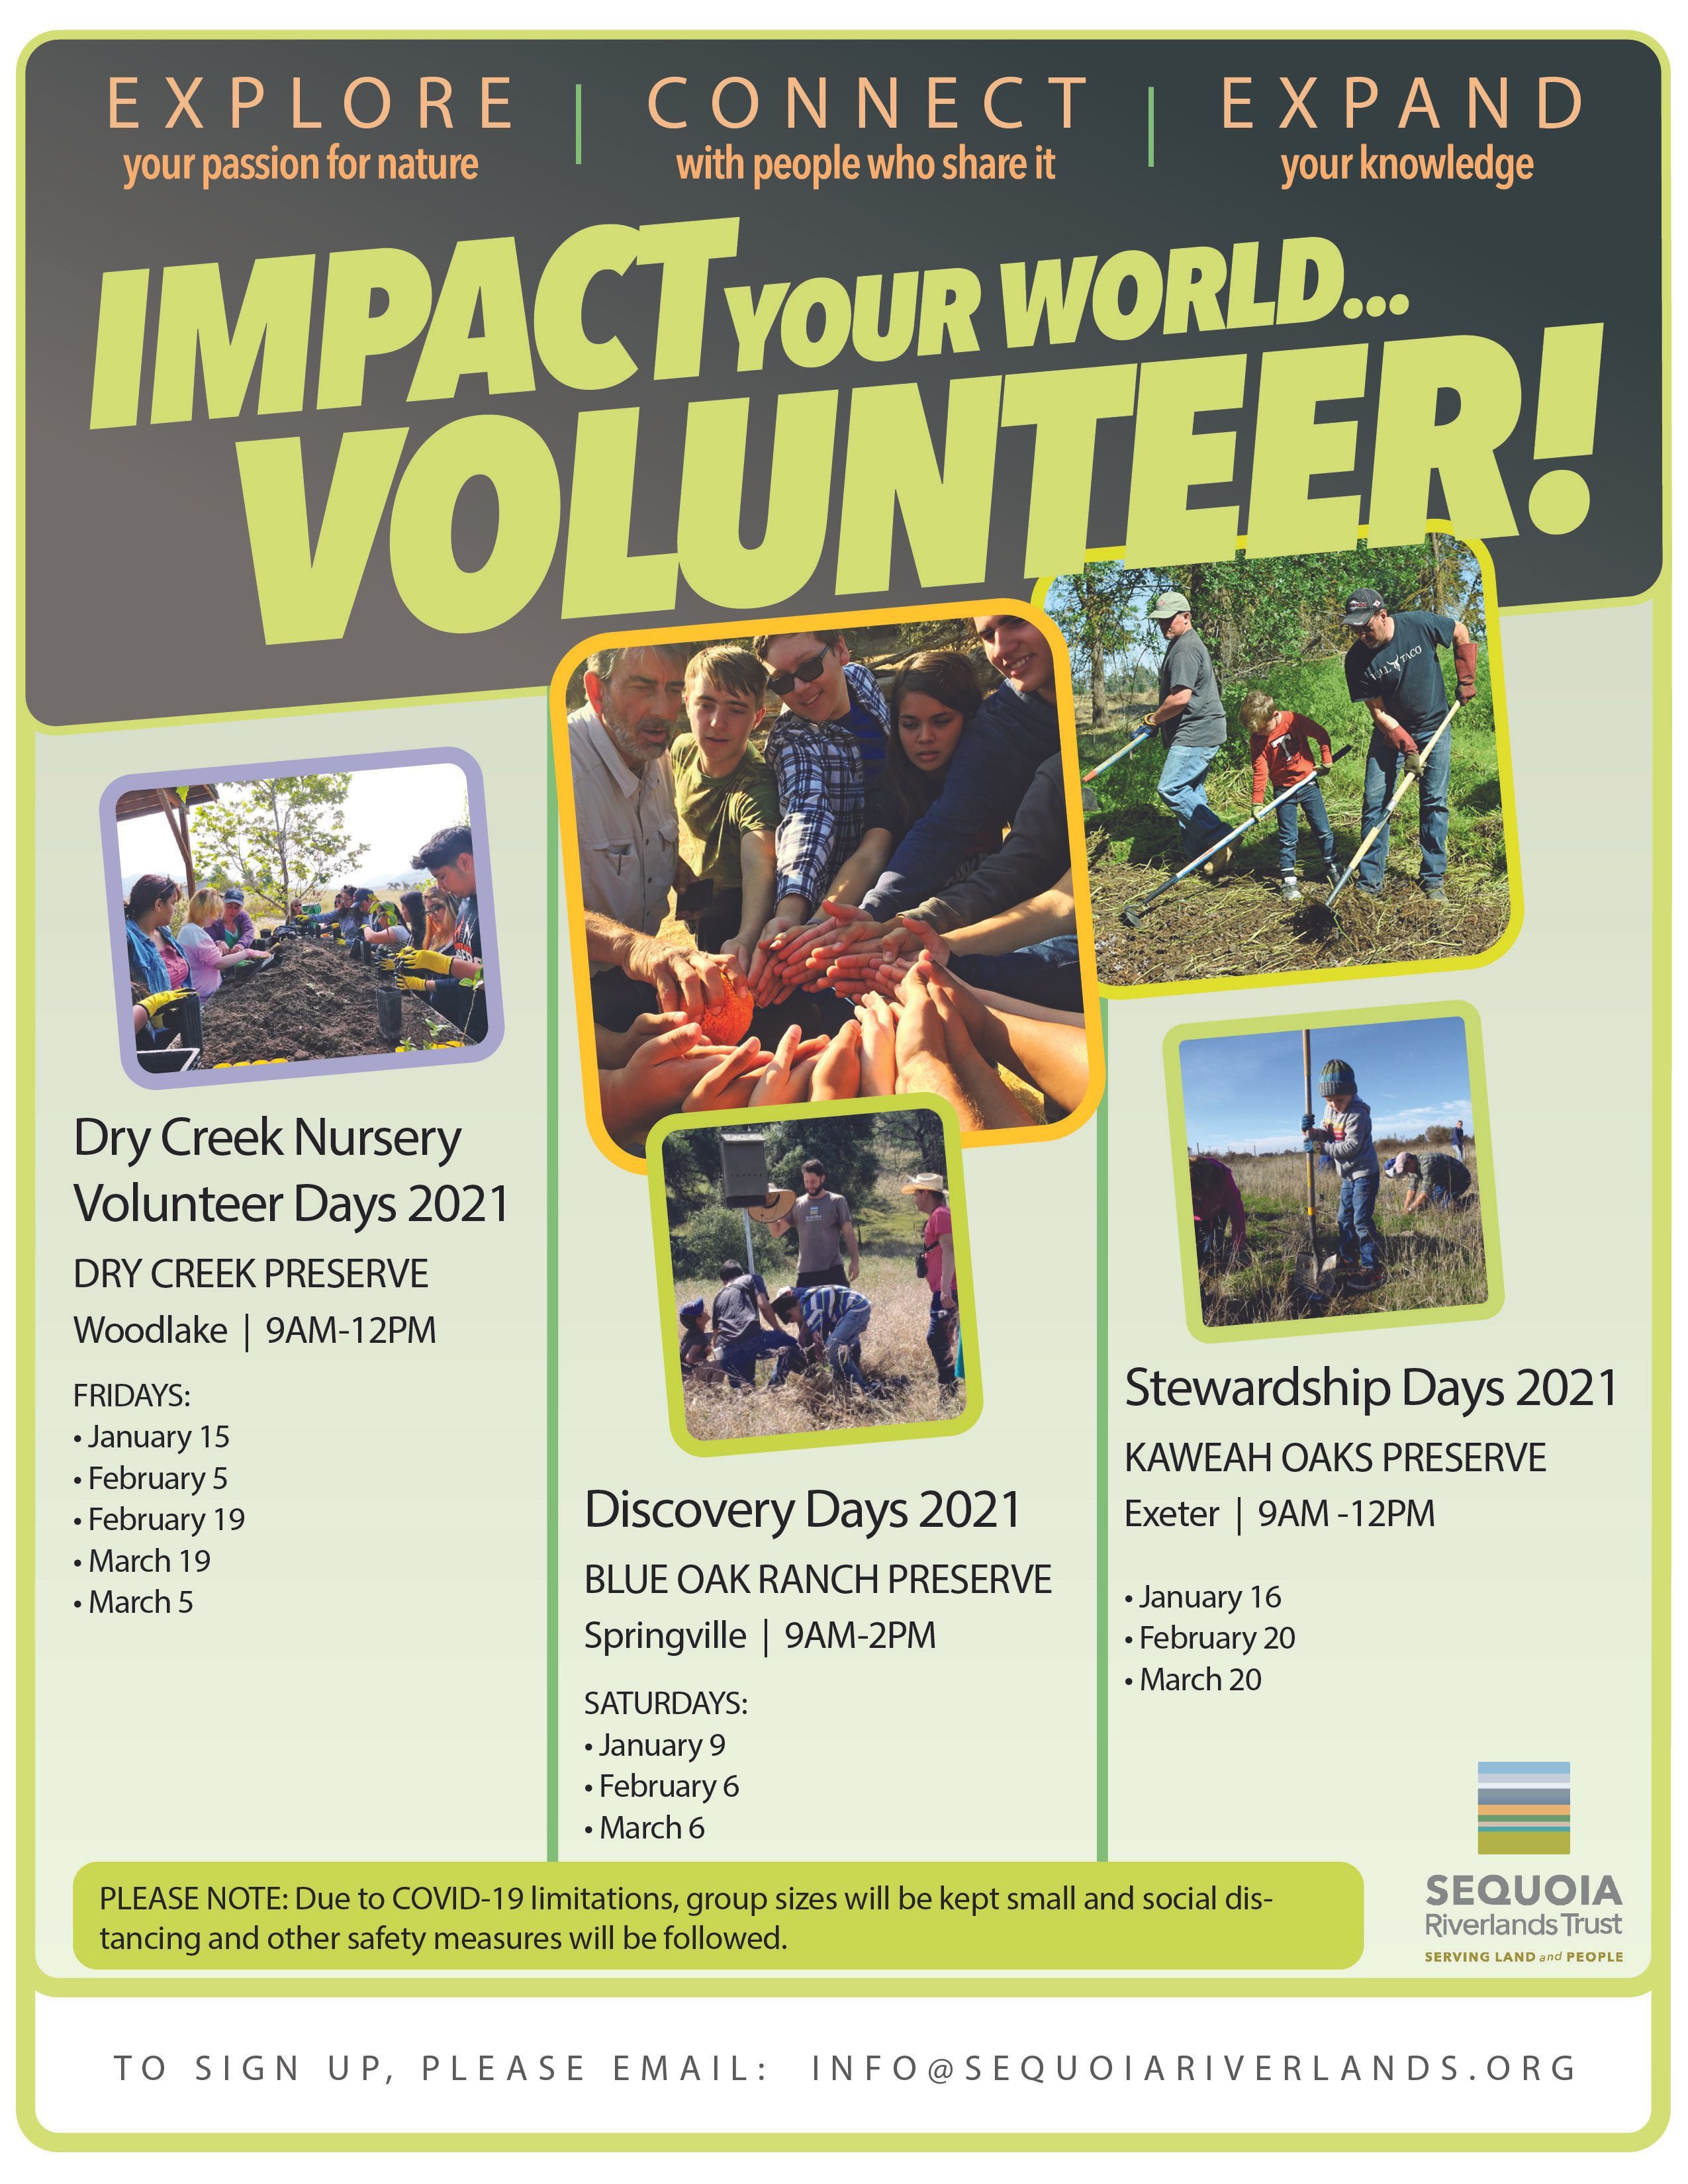 In 2021, IMPACT YOUR WORLD: Volunteer!